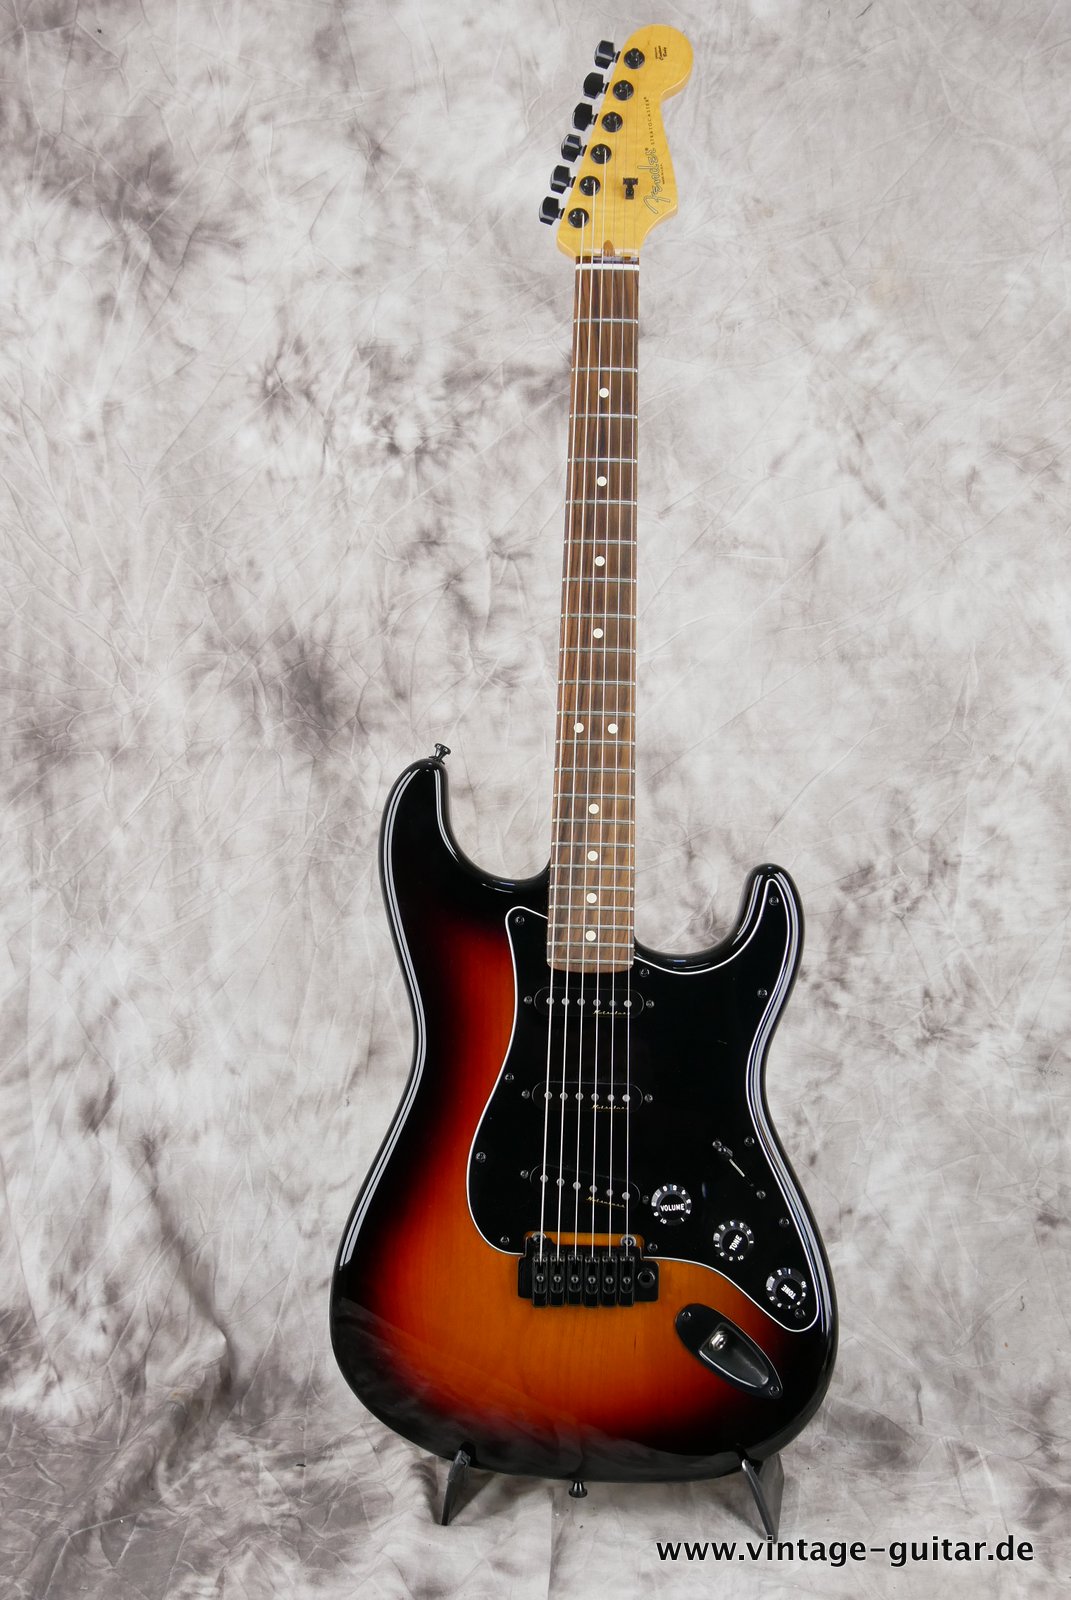 img/vintage/4765/Fender-Stratocaster-2014-US-Standard-black-hardware-001.JPG